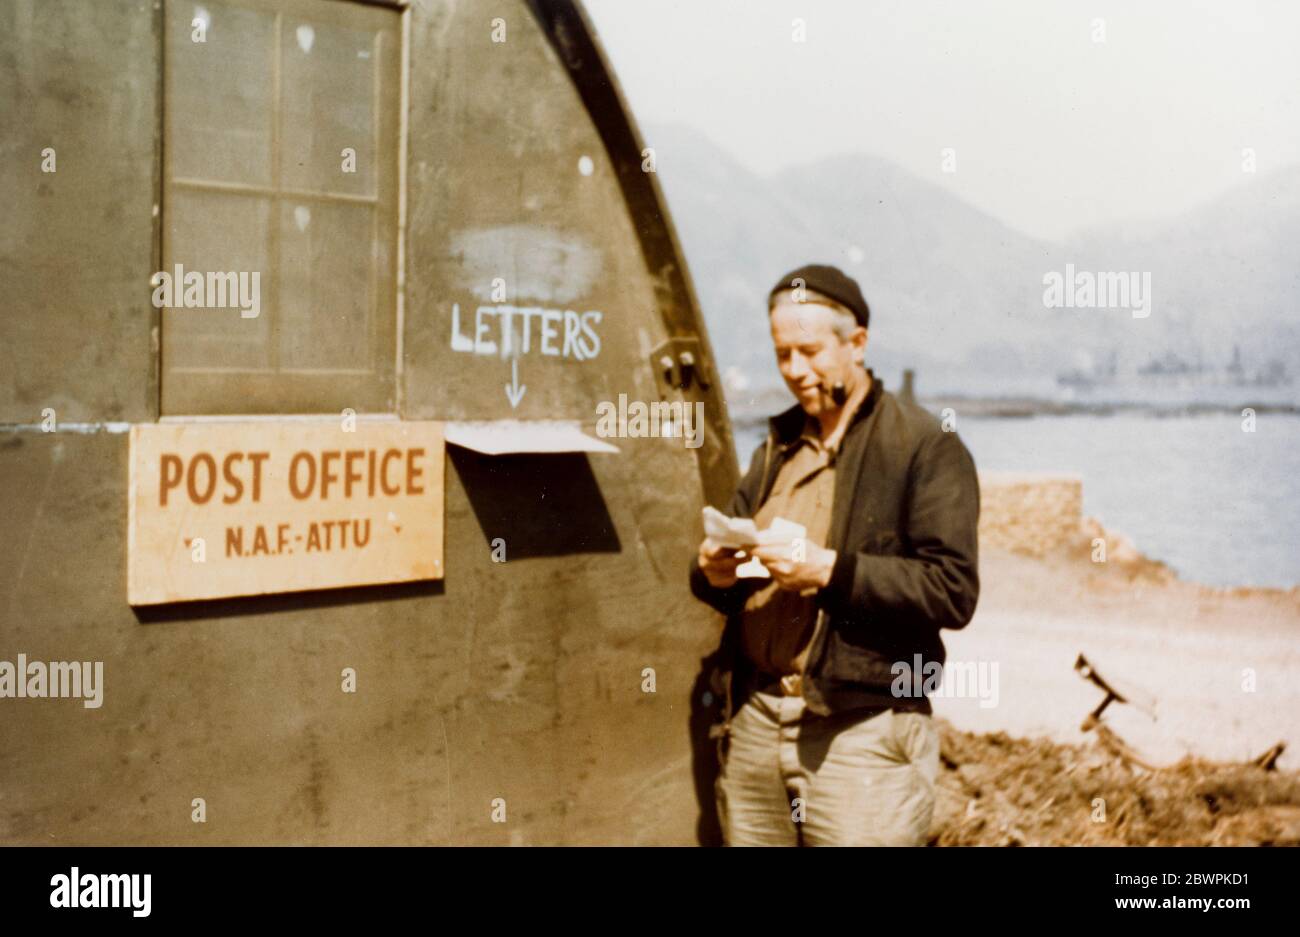 Naval Air Facility ATTU Post Office, Alaska, 20 ottobre 1944. Adak, Alaska. Ufficio postale sul lungomare, 20 ottobre 1944. Nota il cartello per l'ufficio postale di ATTU e l'uomo che legge la lettera. Foto Stock